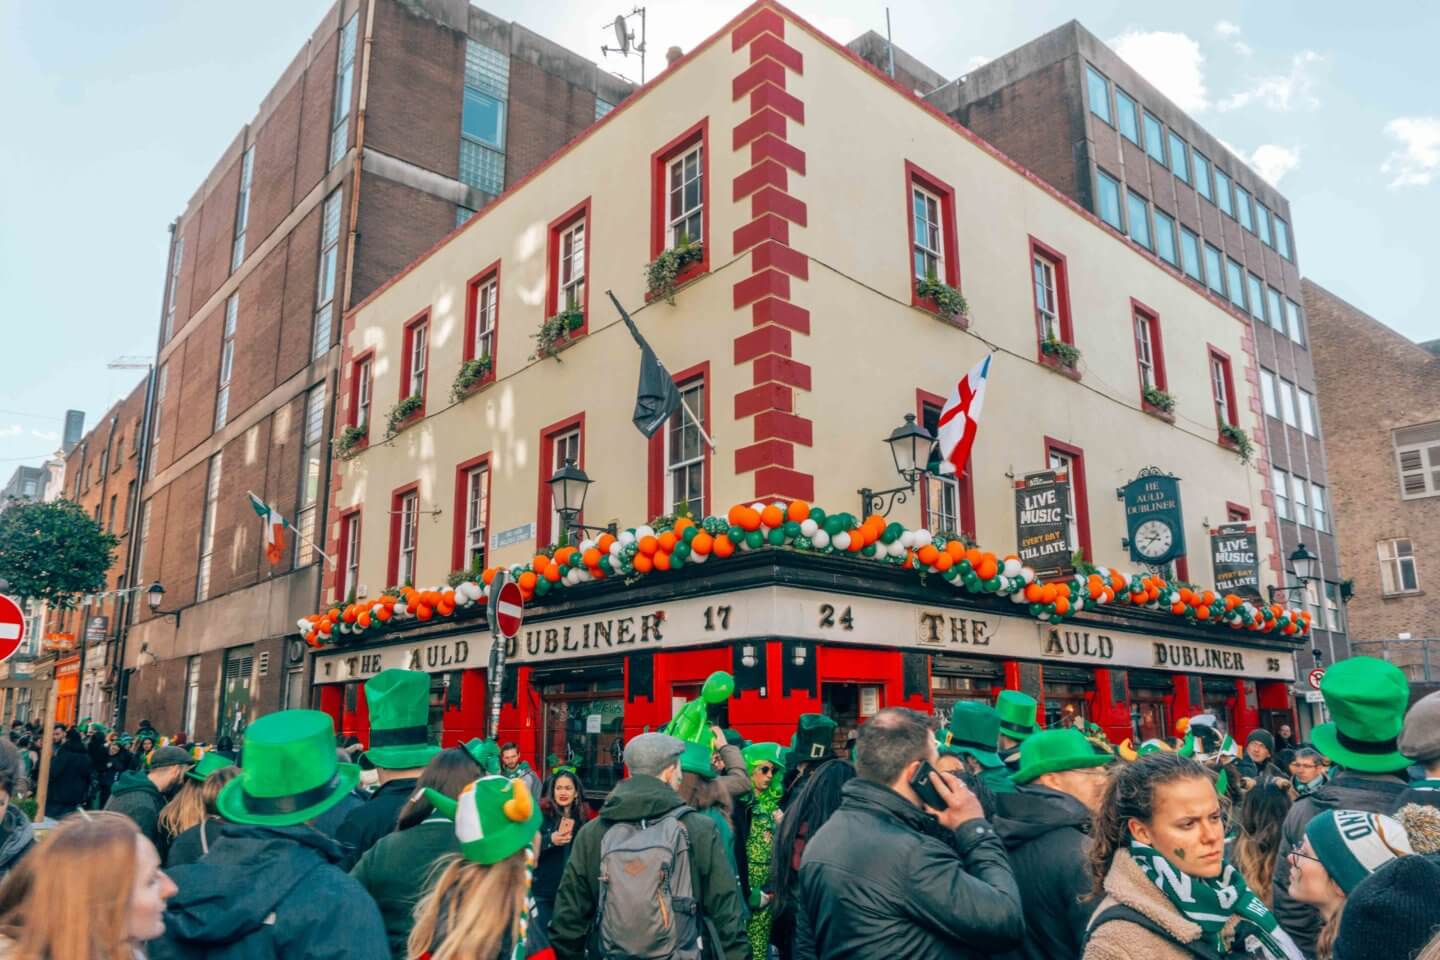 Celebrating St Patrick’s Day in Dublin - Temple Bar